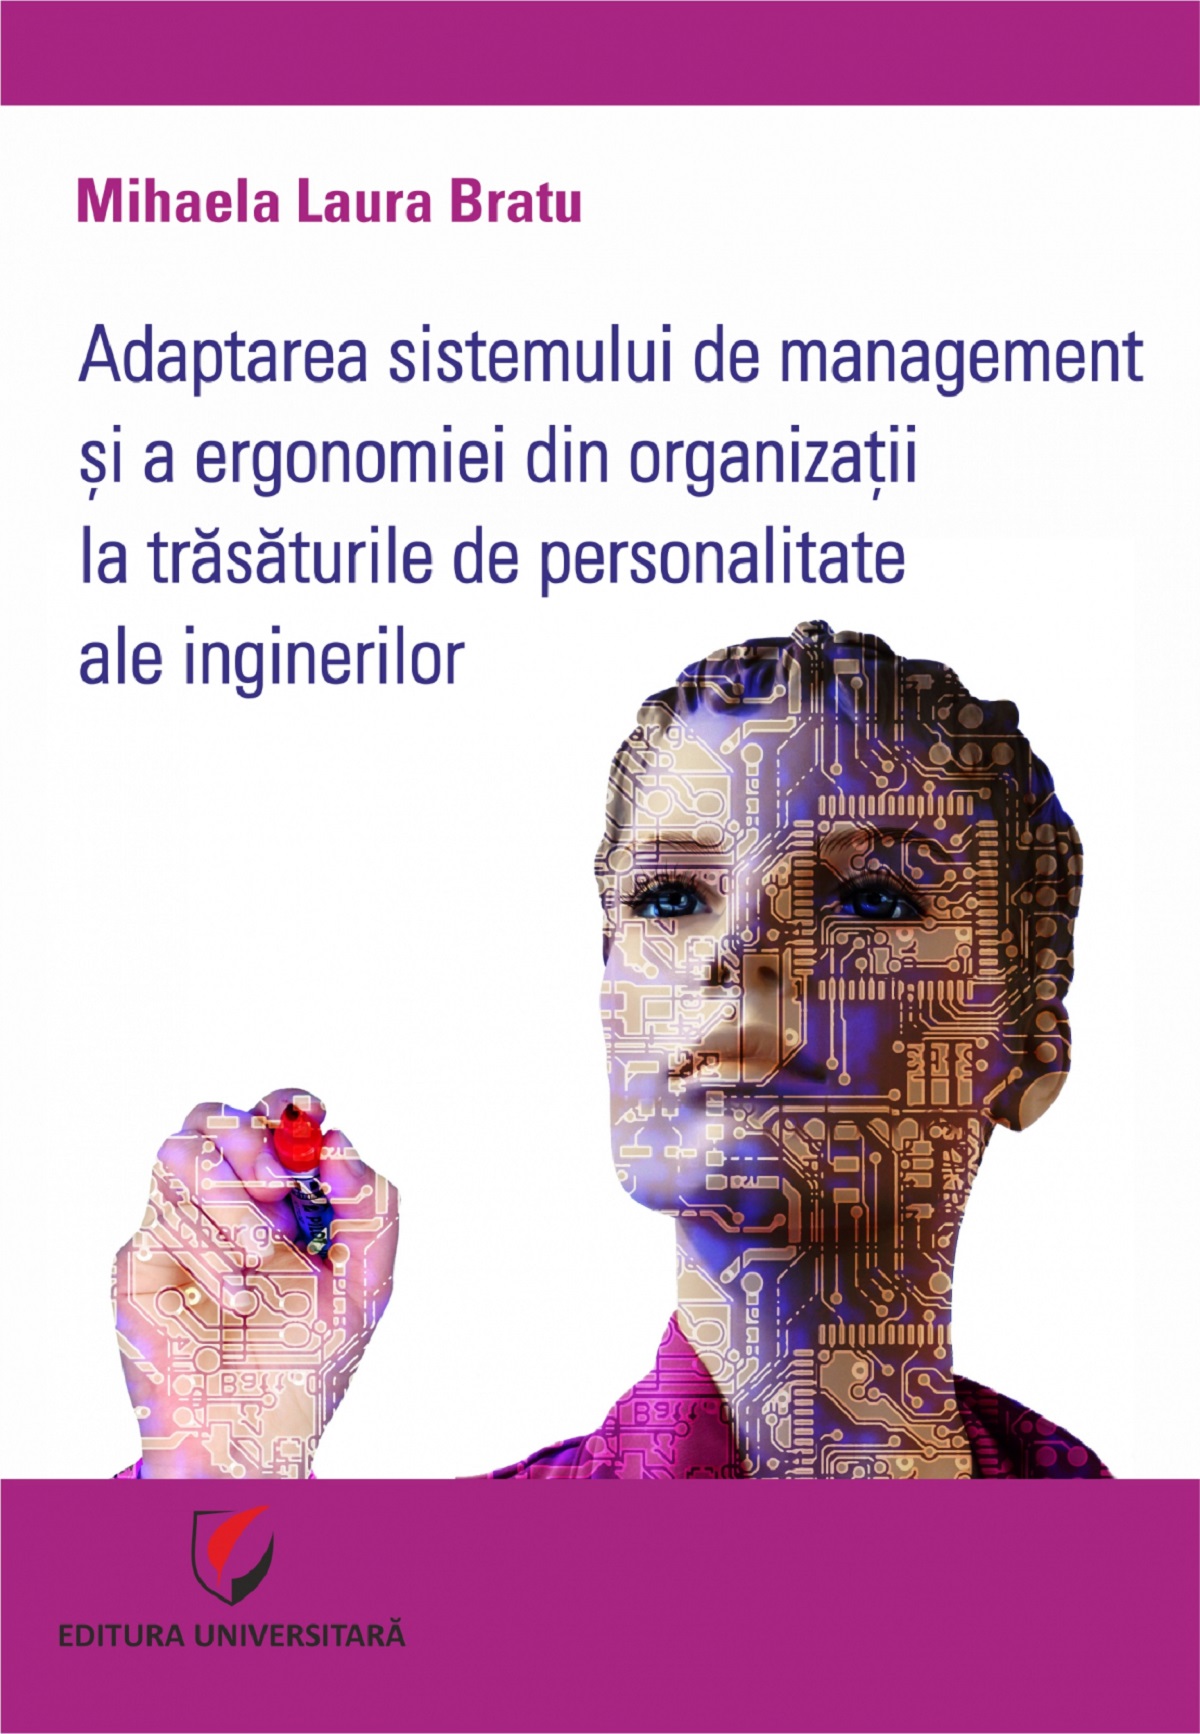 Adaptarea sistemului de management si a ergonomiei din organizatii la trasaturile de personalitate ale inginerilor - Mihaela Laura Bratu